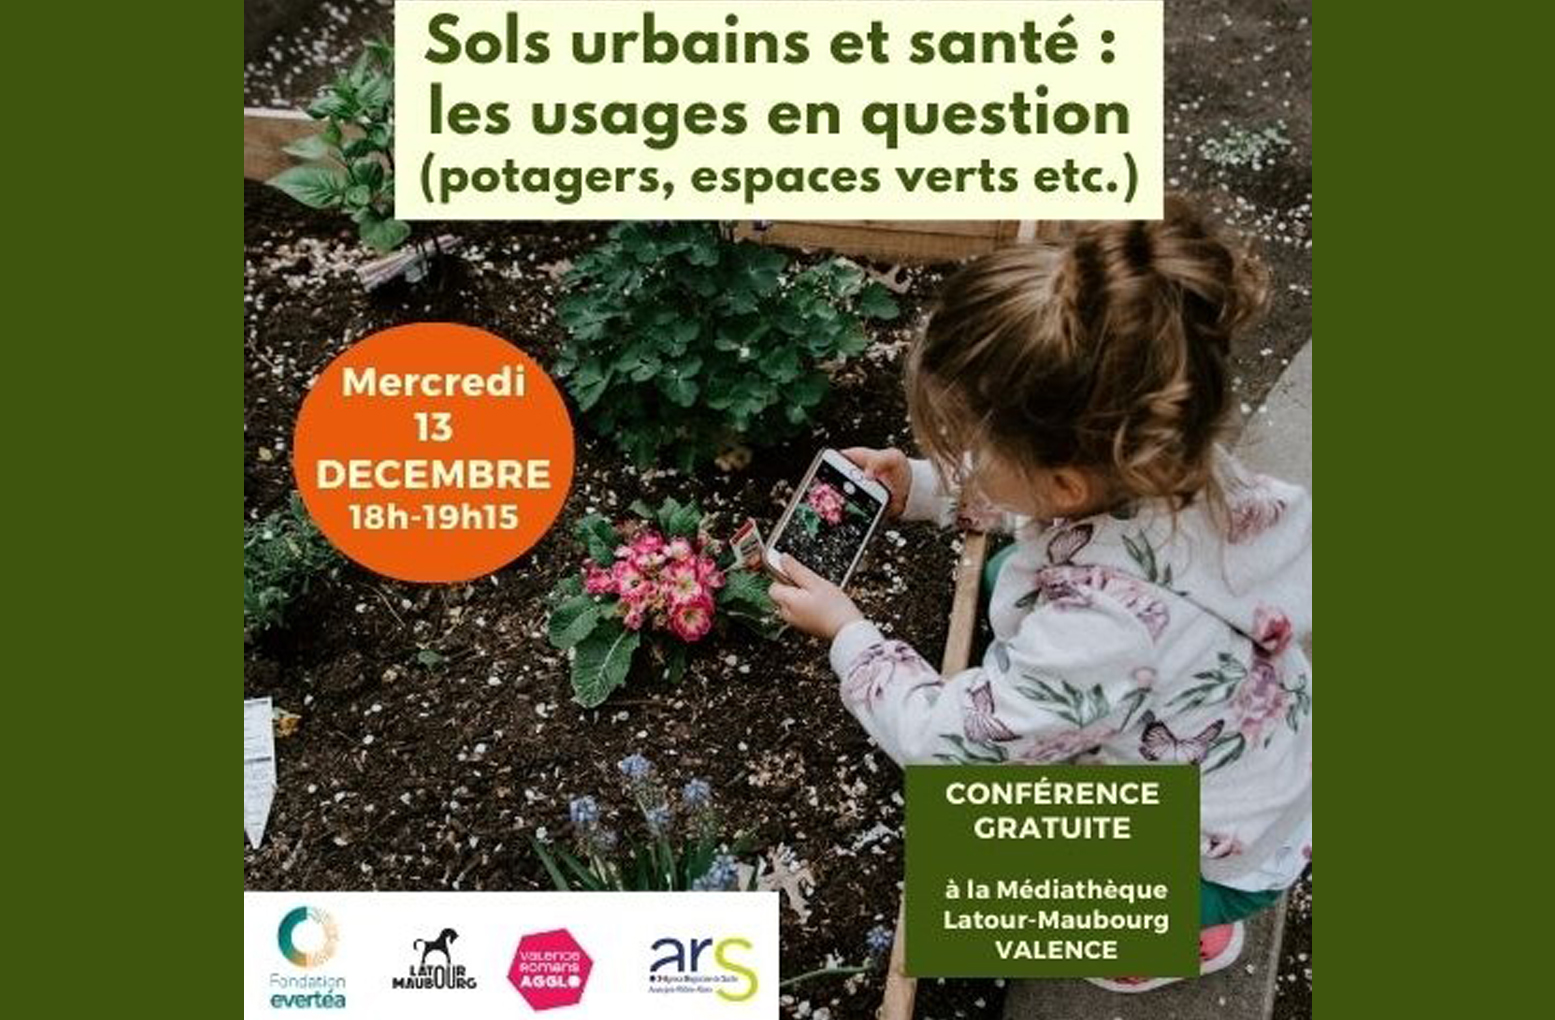 Événement Fondation evertéa – Conférence du 13 décembre : Sols urbains et santé, les usages en question